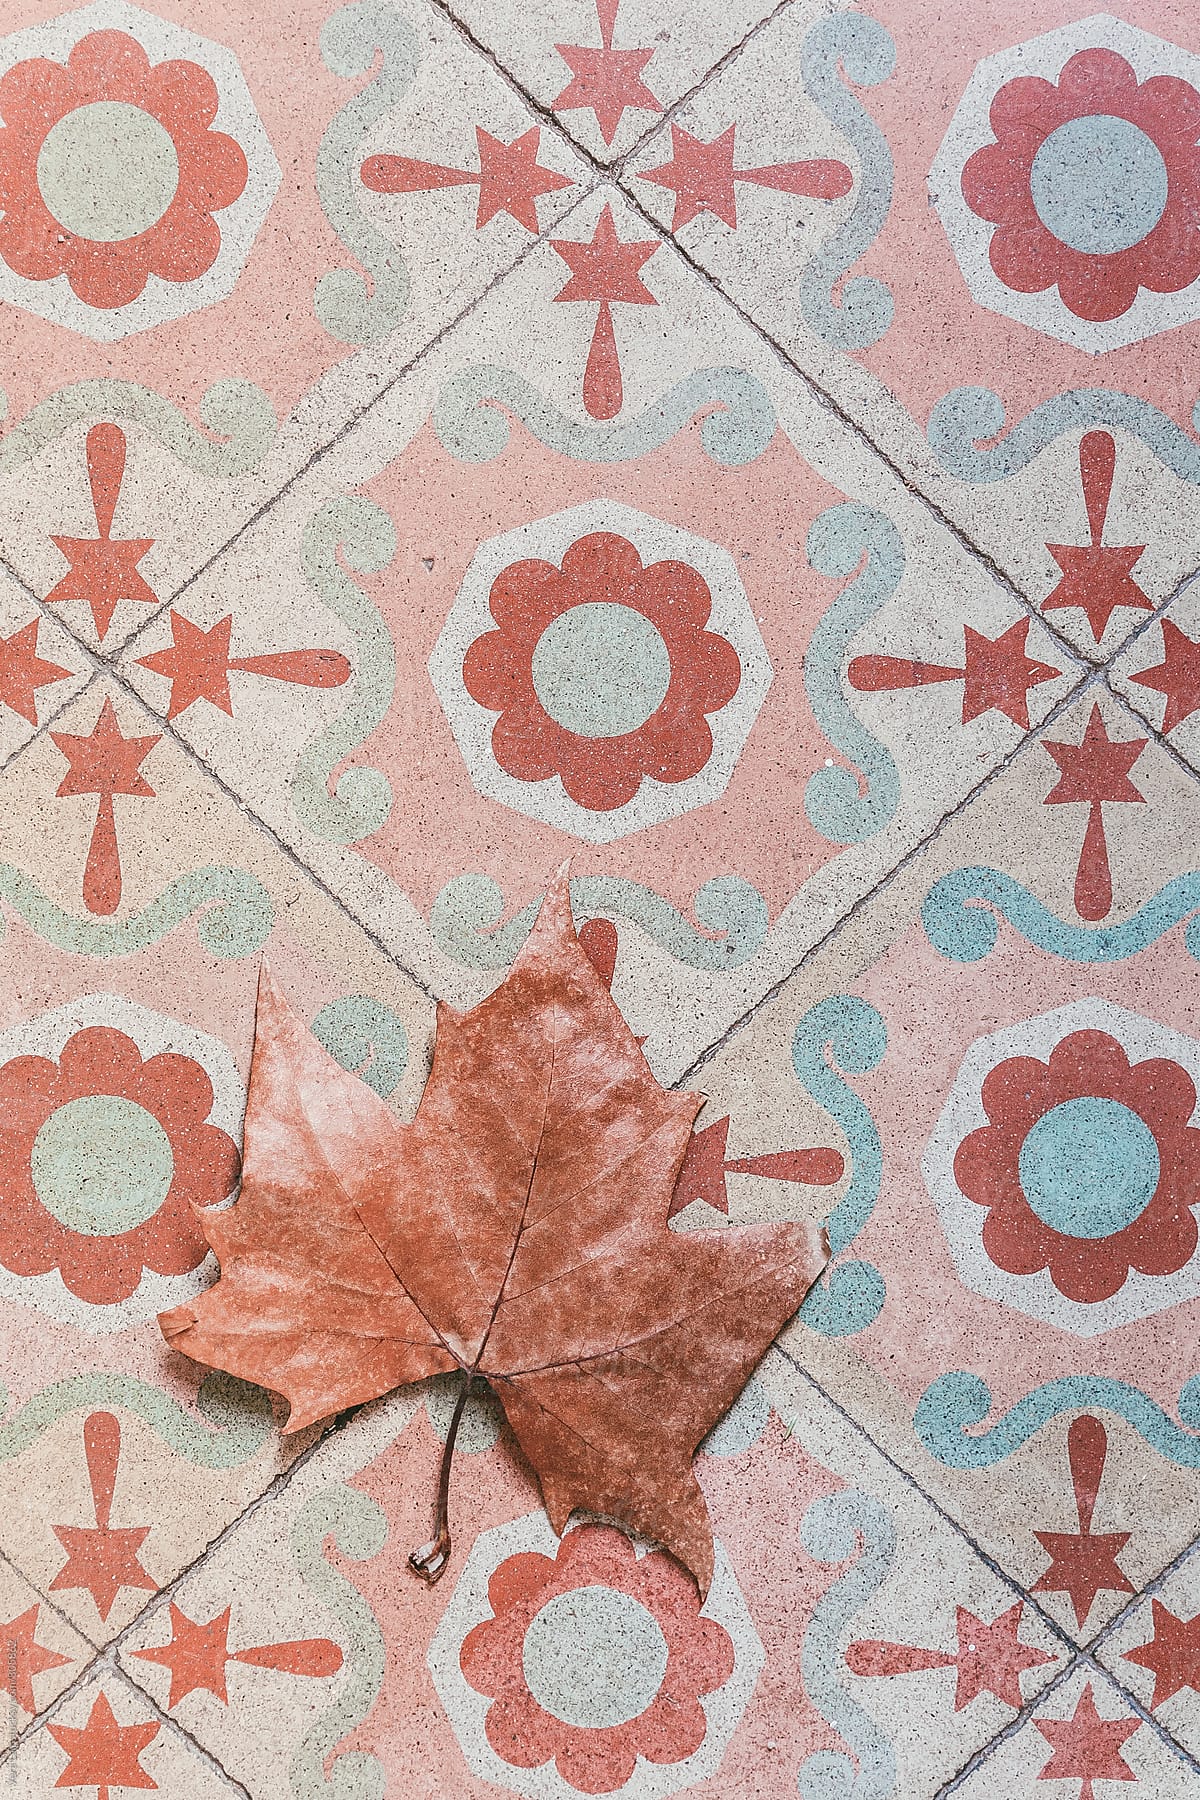 Plane leaf on vintage tile